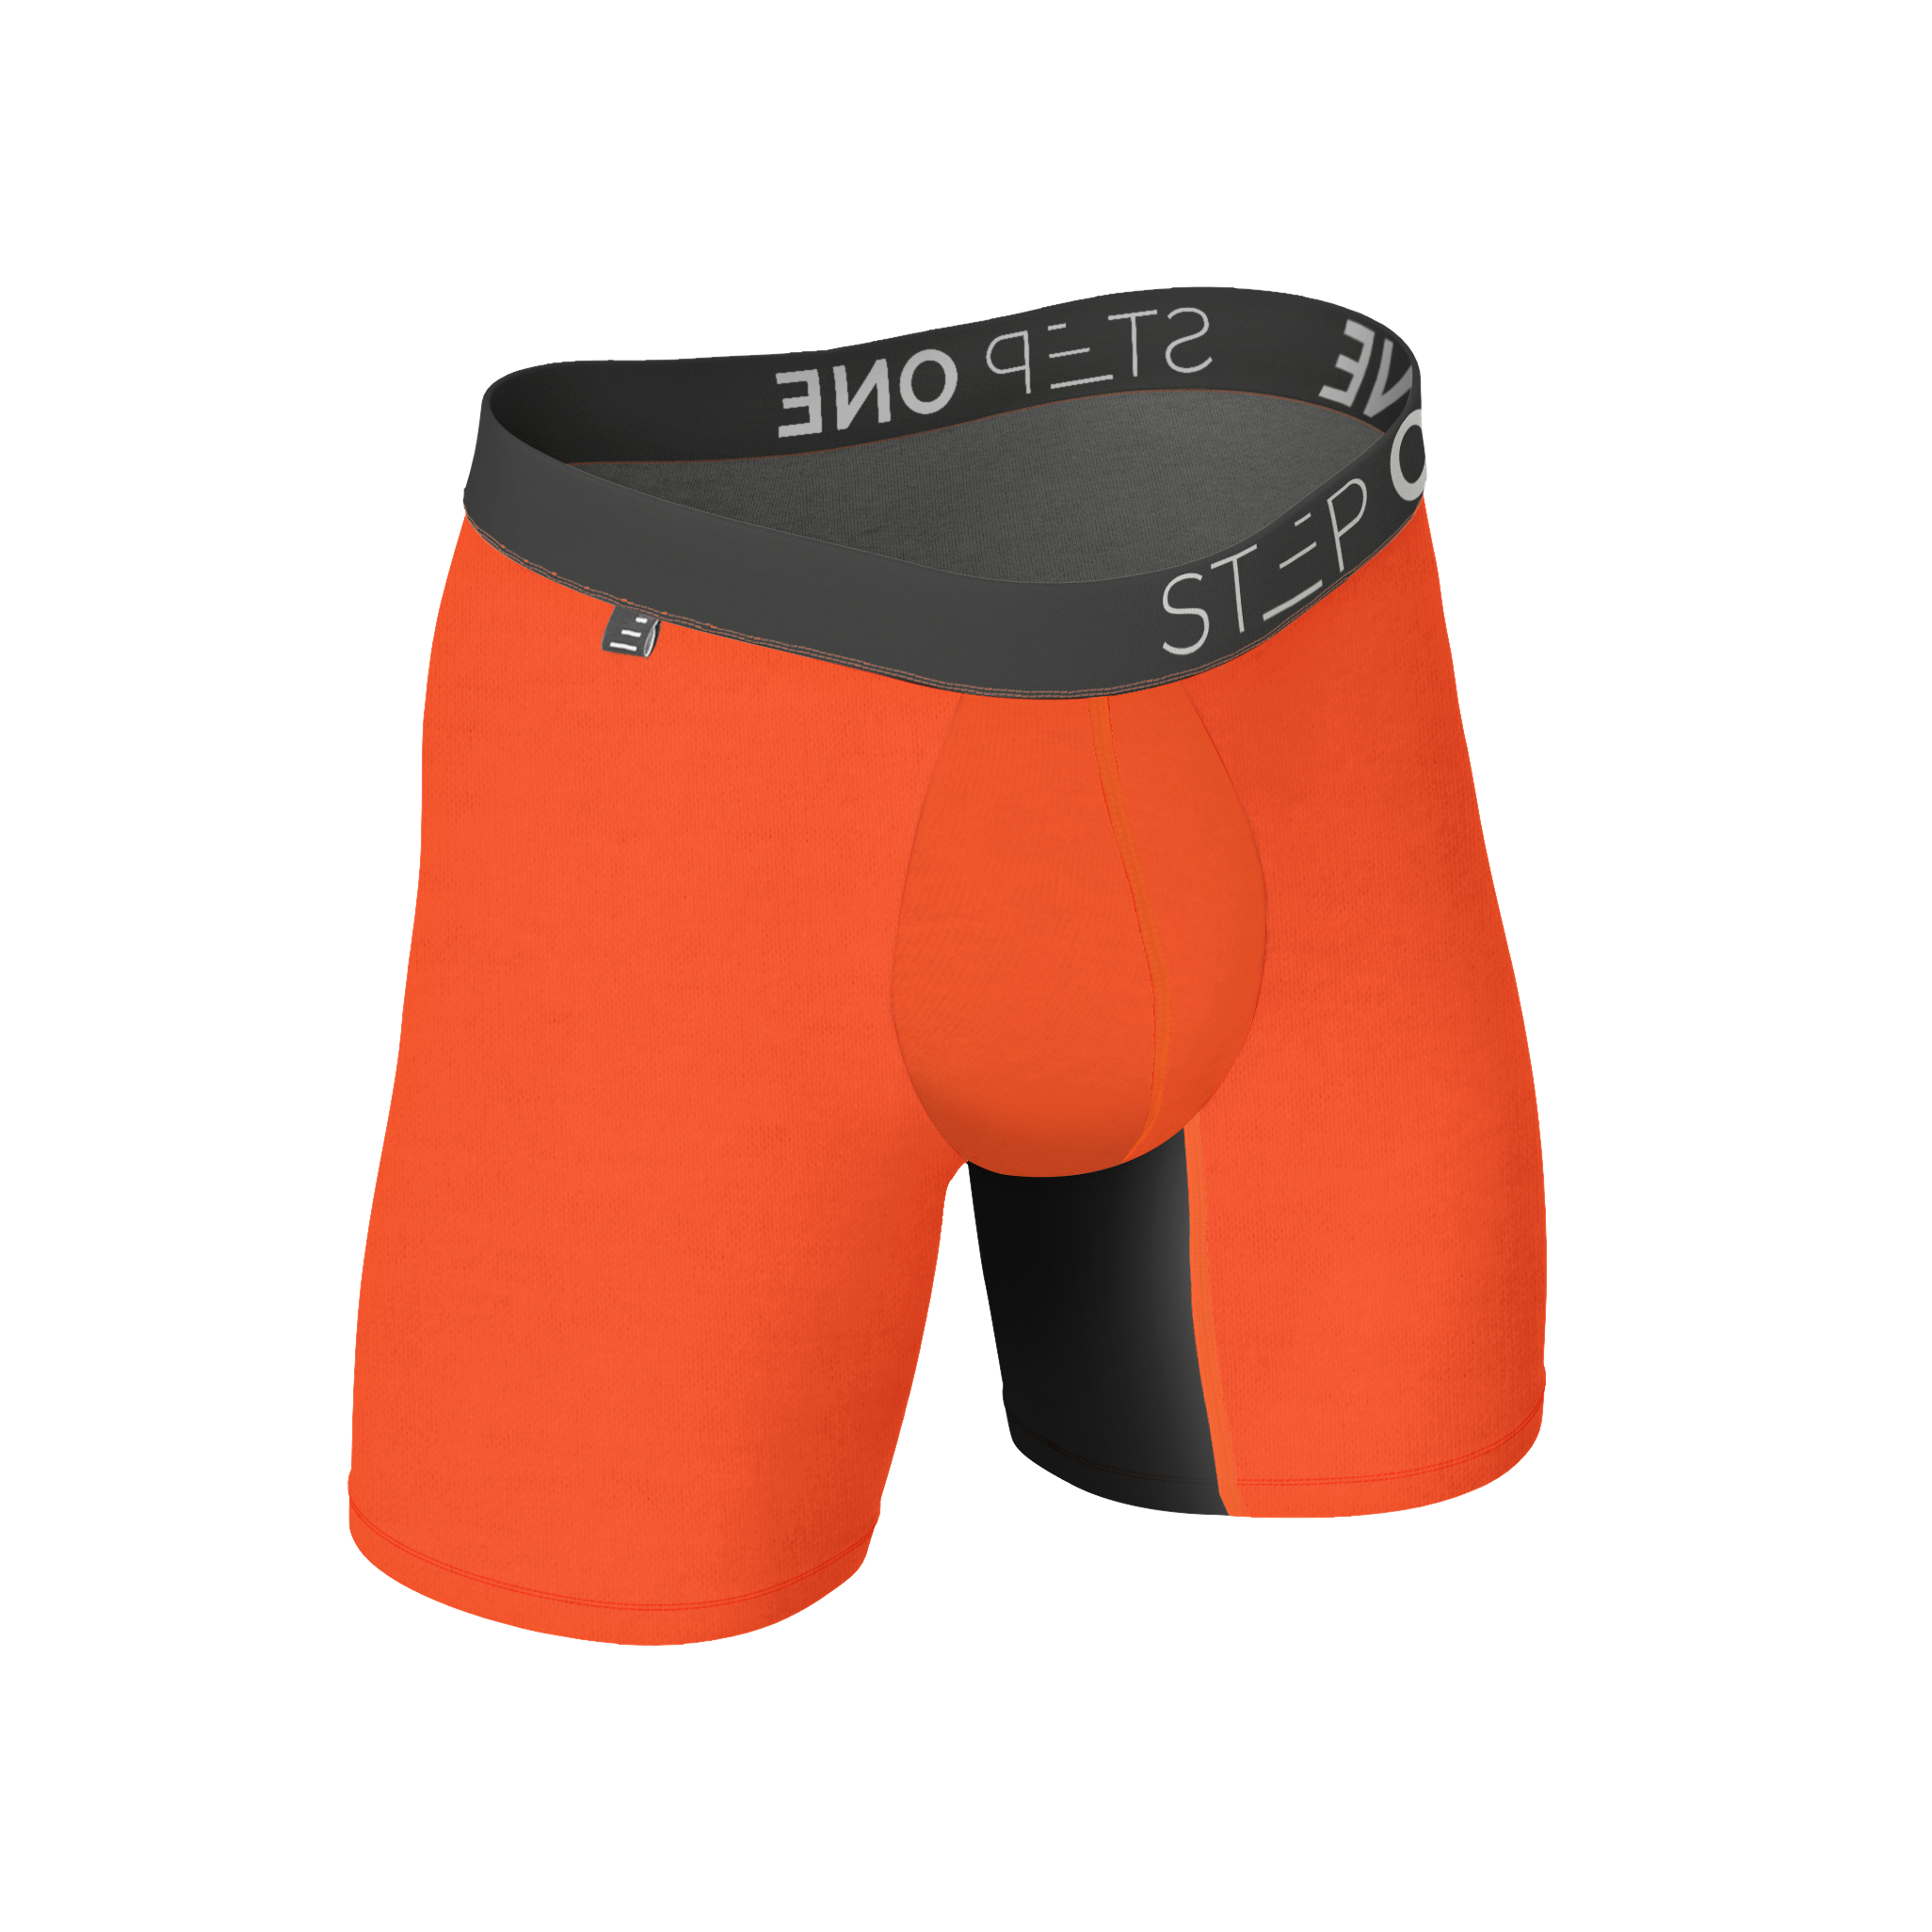 Boxer Brief - Blowfish  Step One Men's Underwear US